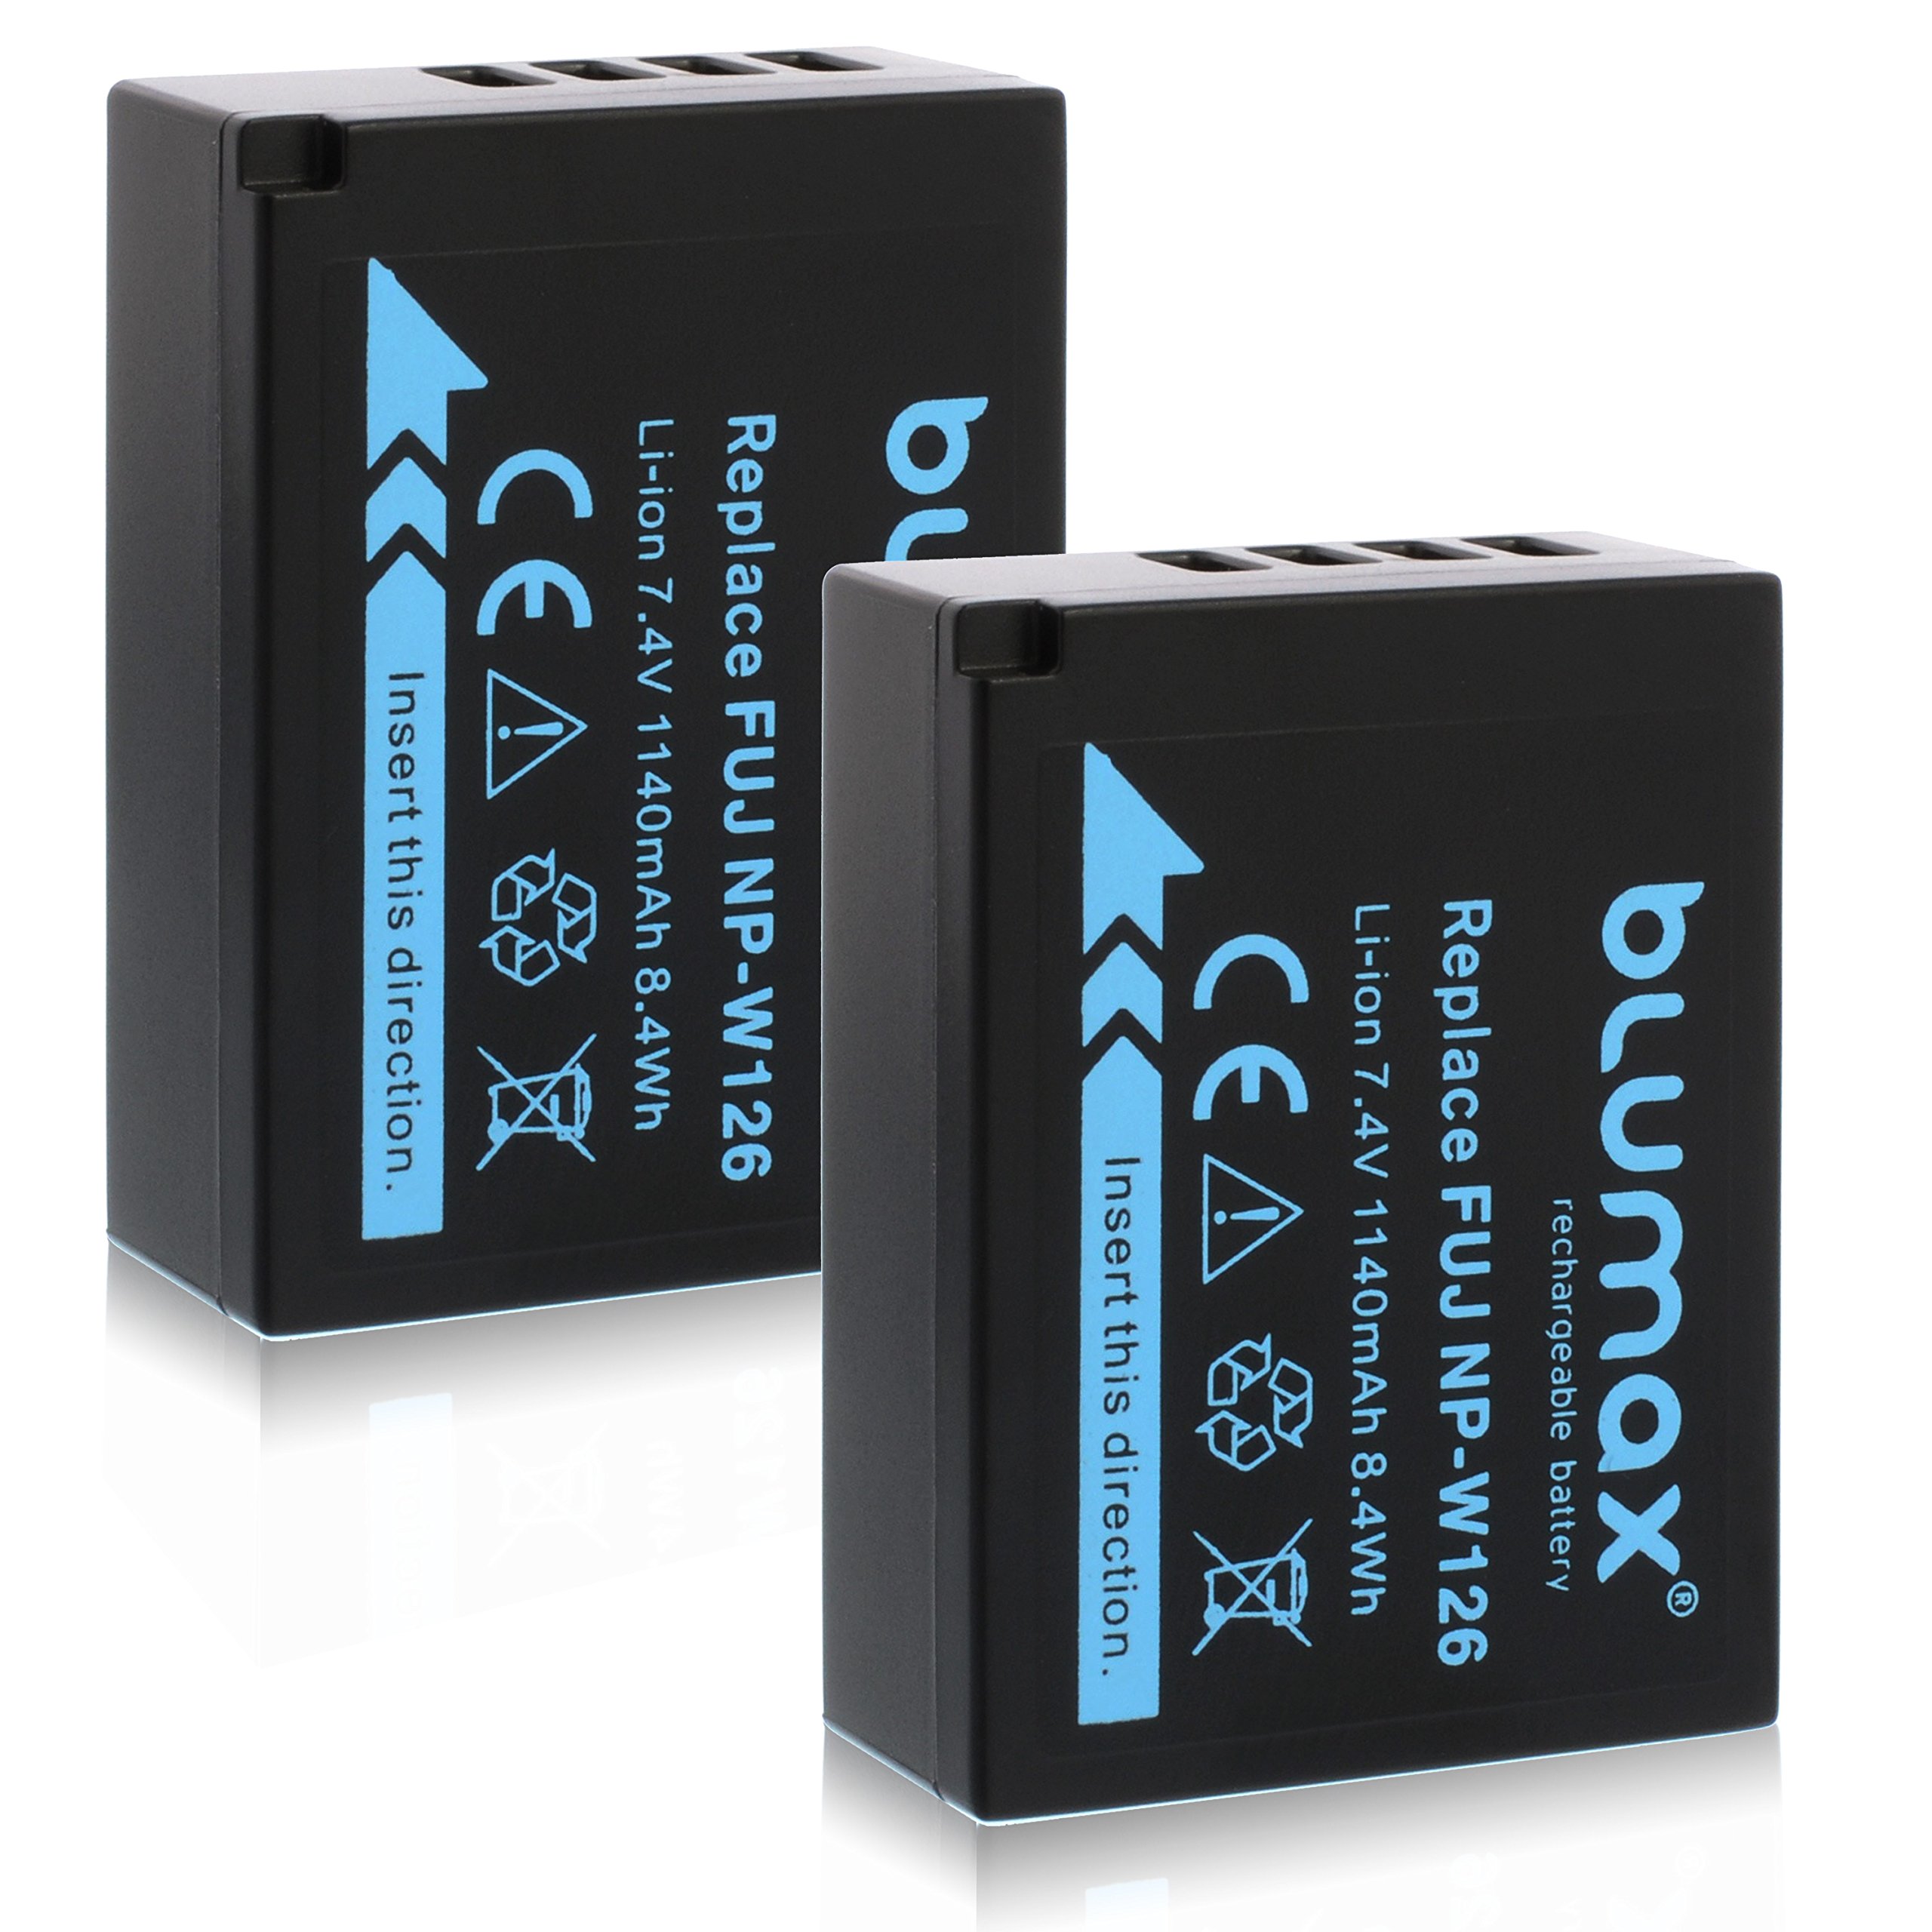 2X Blumax Akku für Fujifilm NP-W126 NP-W126s 1140mAh |kompatibel mit Fujifilm X-T1 X-T2 X-T10 X-T20 X-Pro2 und andere X-E1 X-E2 X-M1 X-A1 X-A2 X-Pro1 X-ES2 X-A3 HS50EXR